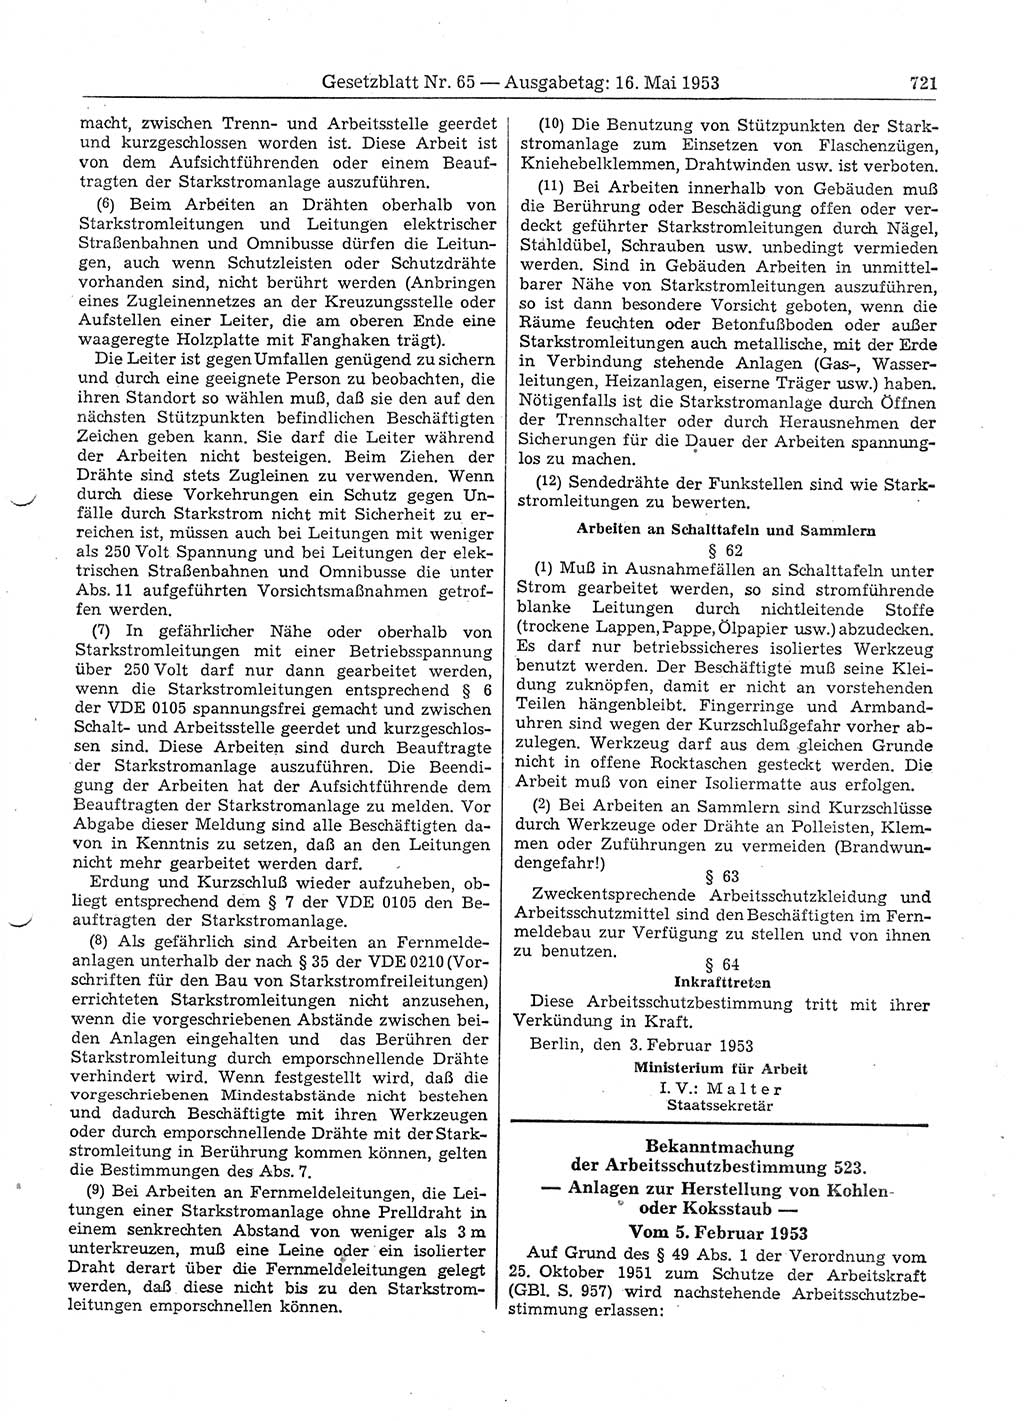 Gesetzblatt (GBl.) der Deutschen Demokratischen Republik (DDR) 1953, Seite 721 (GBl. DDR 1953, S. 721)